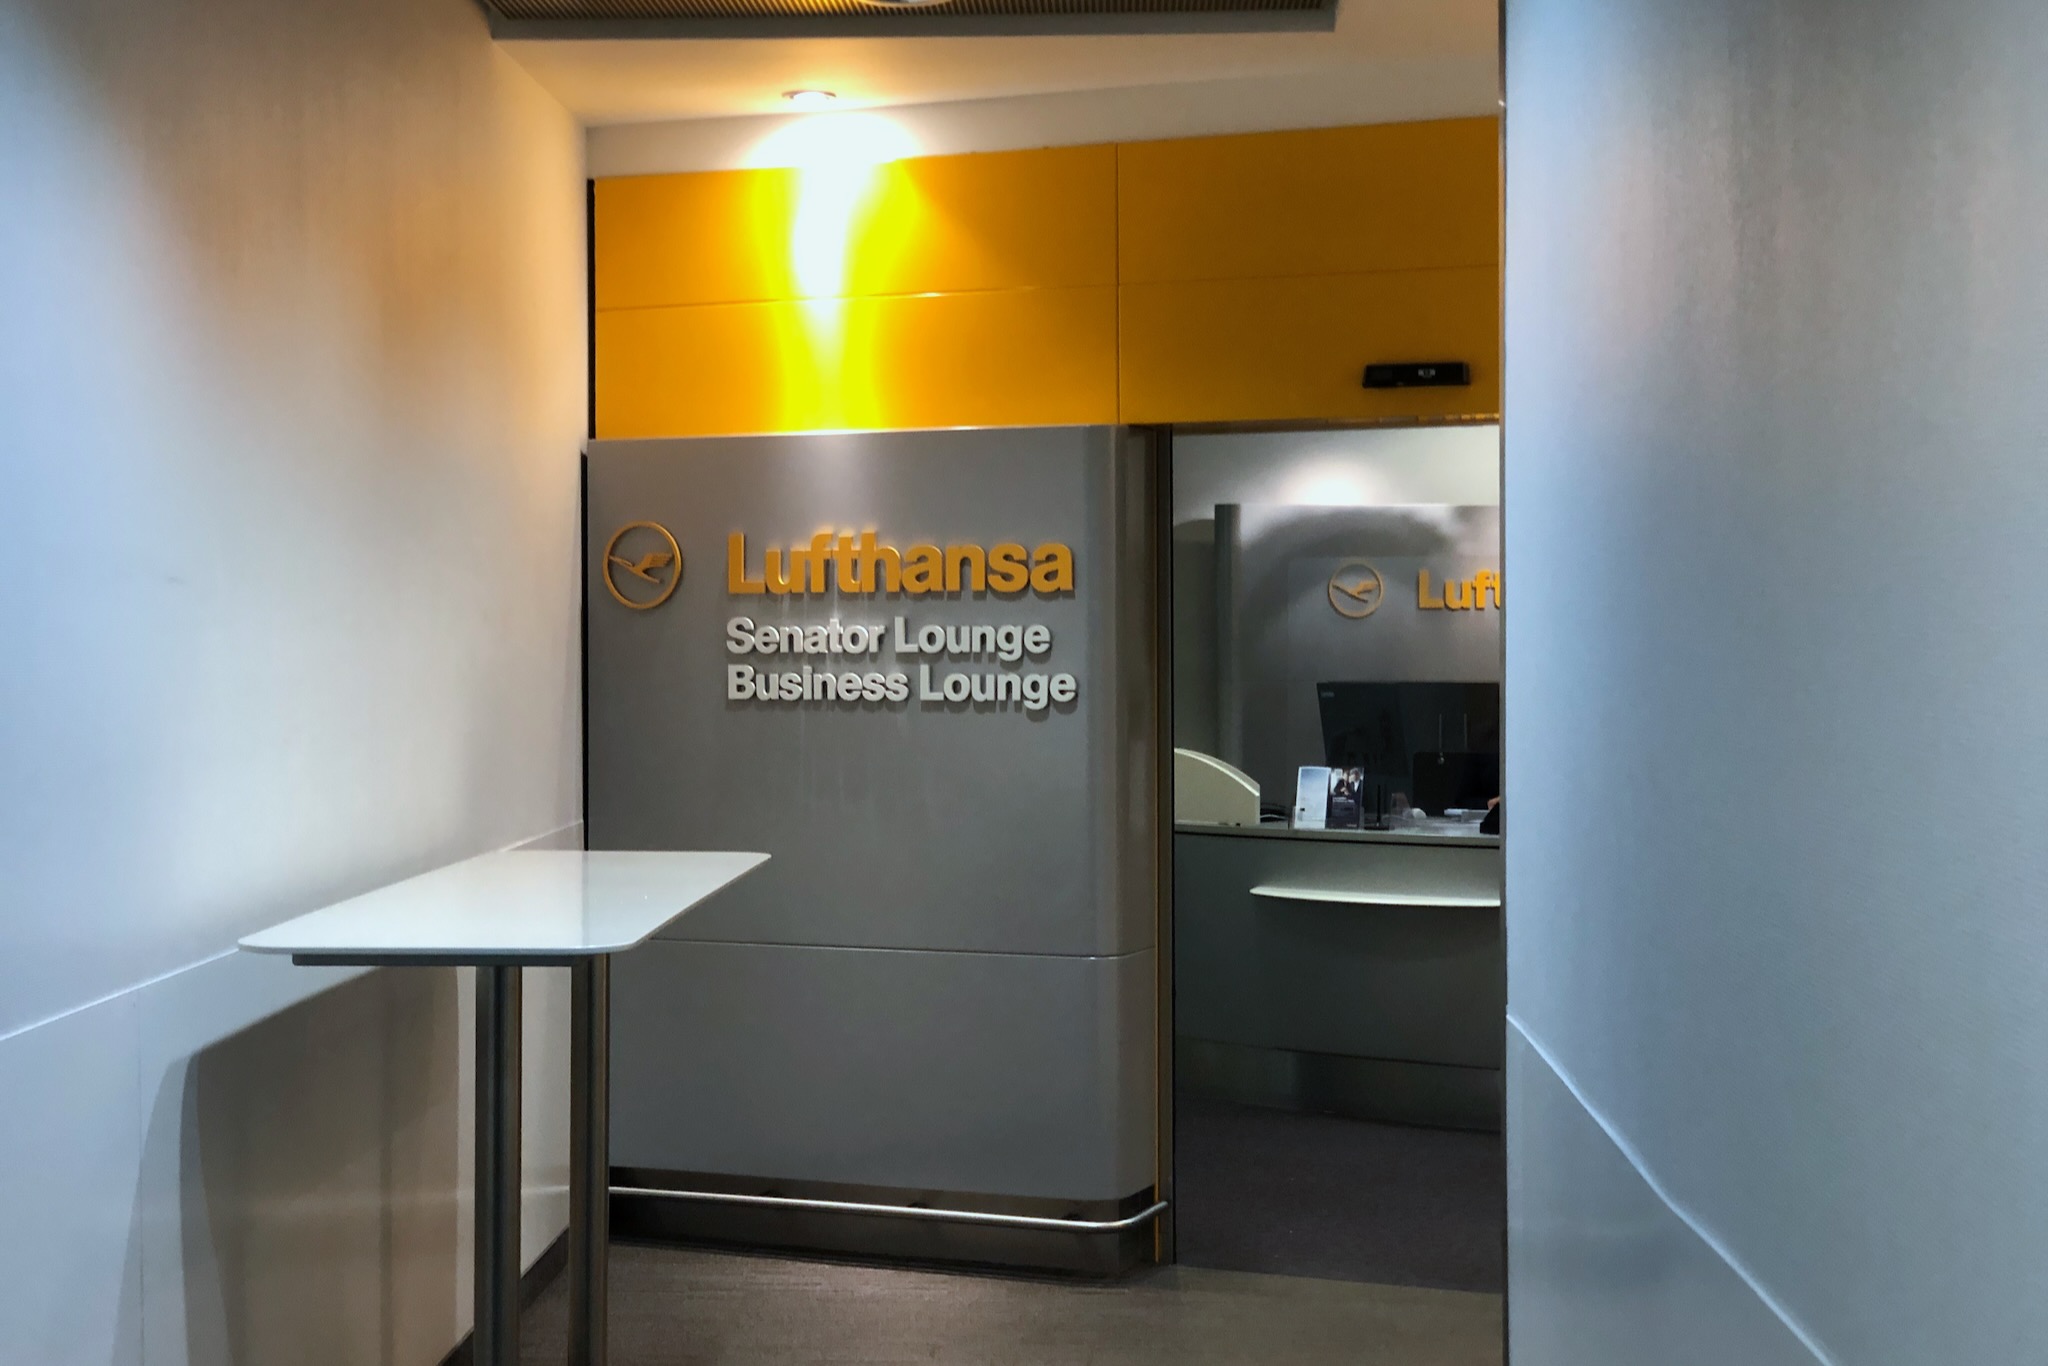 Eingang zu den Lufthansa Lounges Hamburg